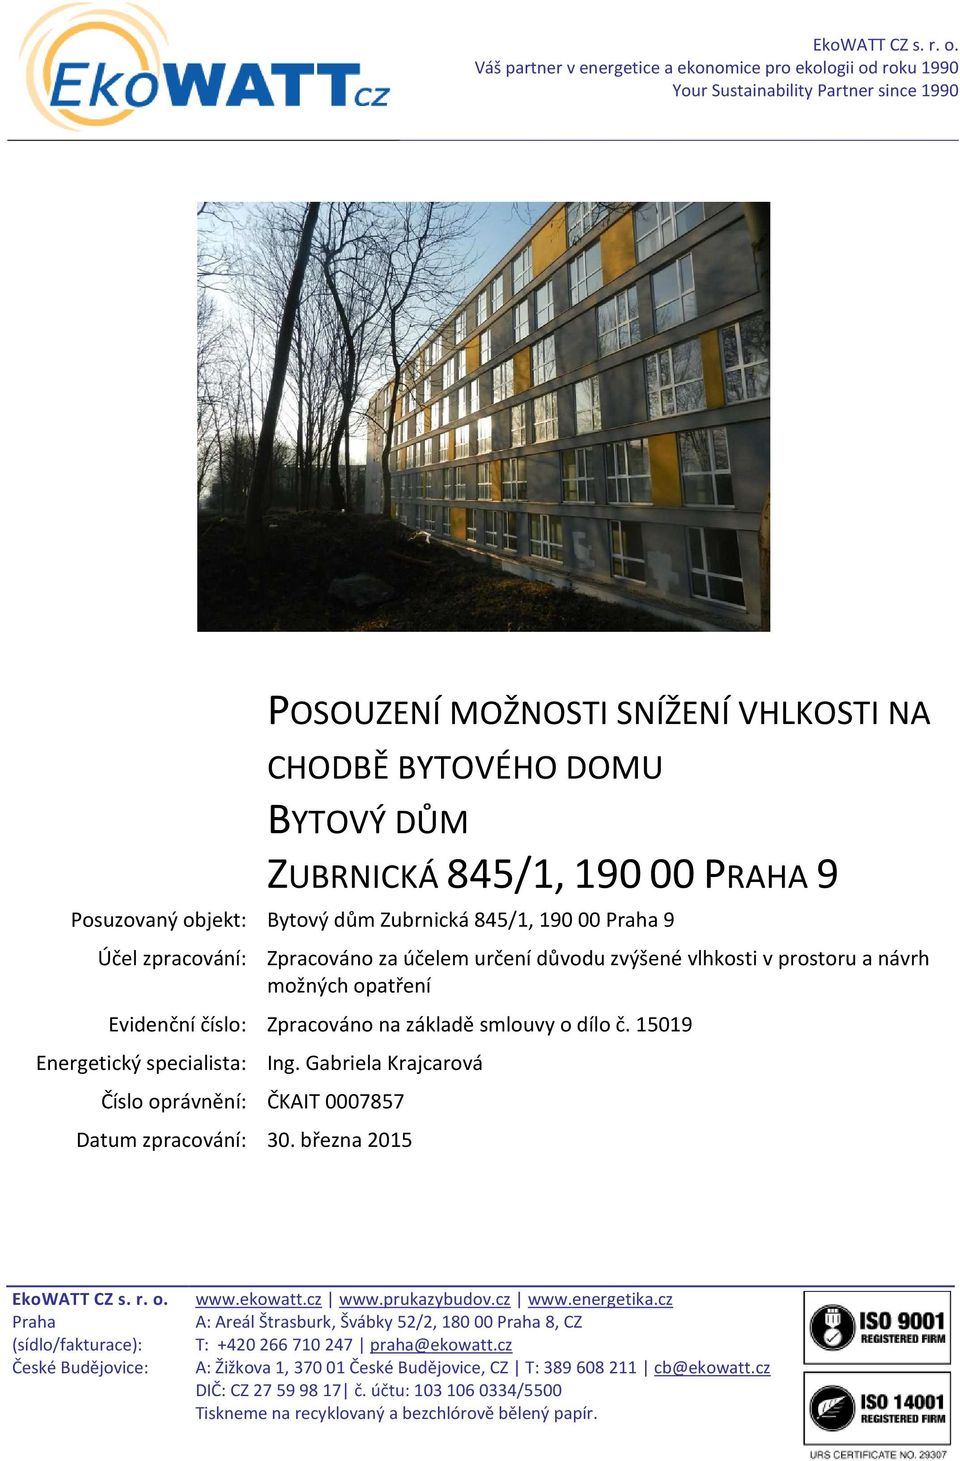 PRAHA 9 Posuzovaný objekt: Bytový dům Zubrnická 845/1, 190 00 Praha 9 Účel zpracování: Zpracováno za účelem určení důvodu zvýšené vlhkosti v prostoru a návrh možných opatření Evidenční číslo: